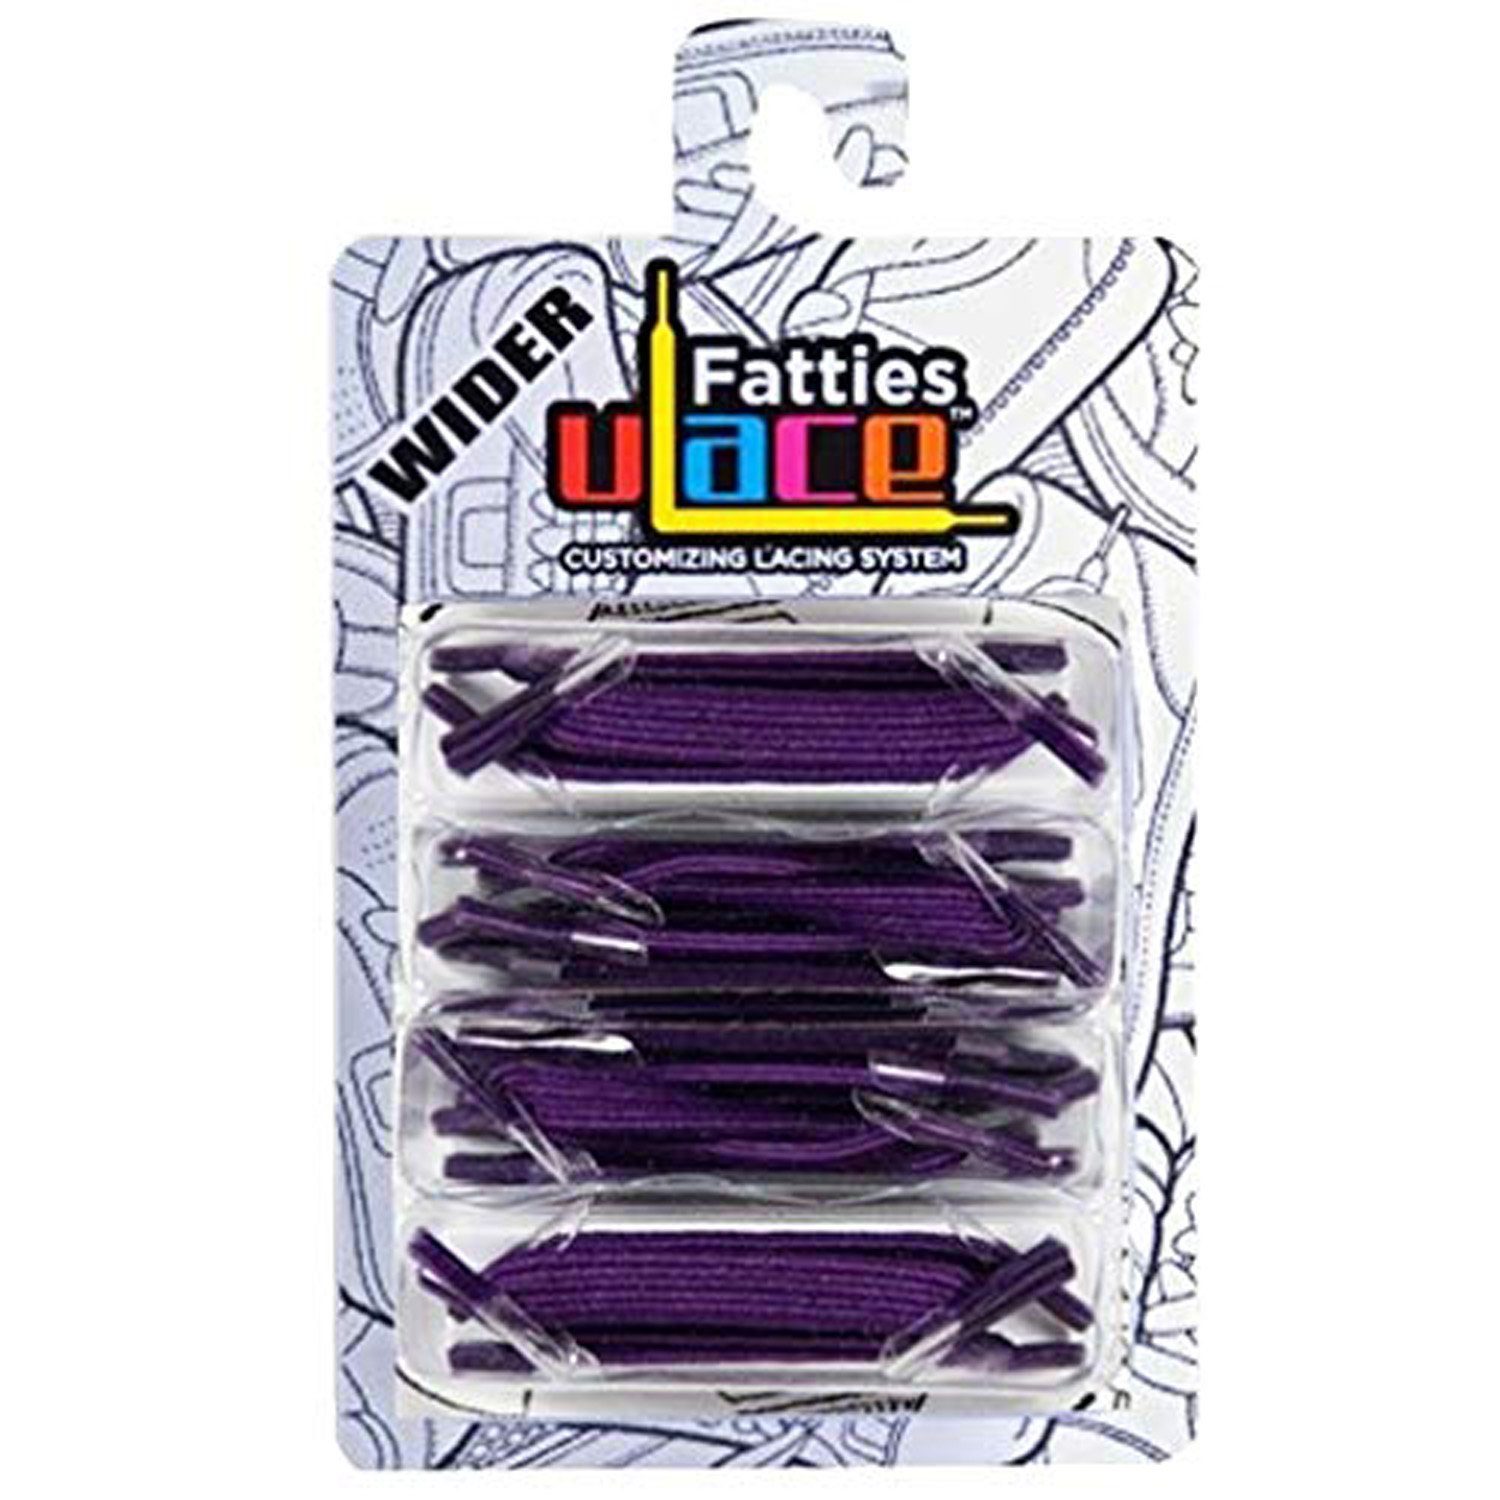 U-Laces Schnürsenkel X-Wide Fatties 16 Stück - elastische Schnürsenkel mit Wiederhaken Purple